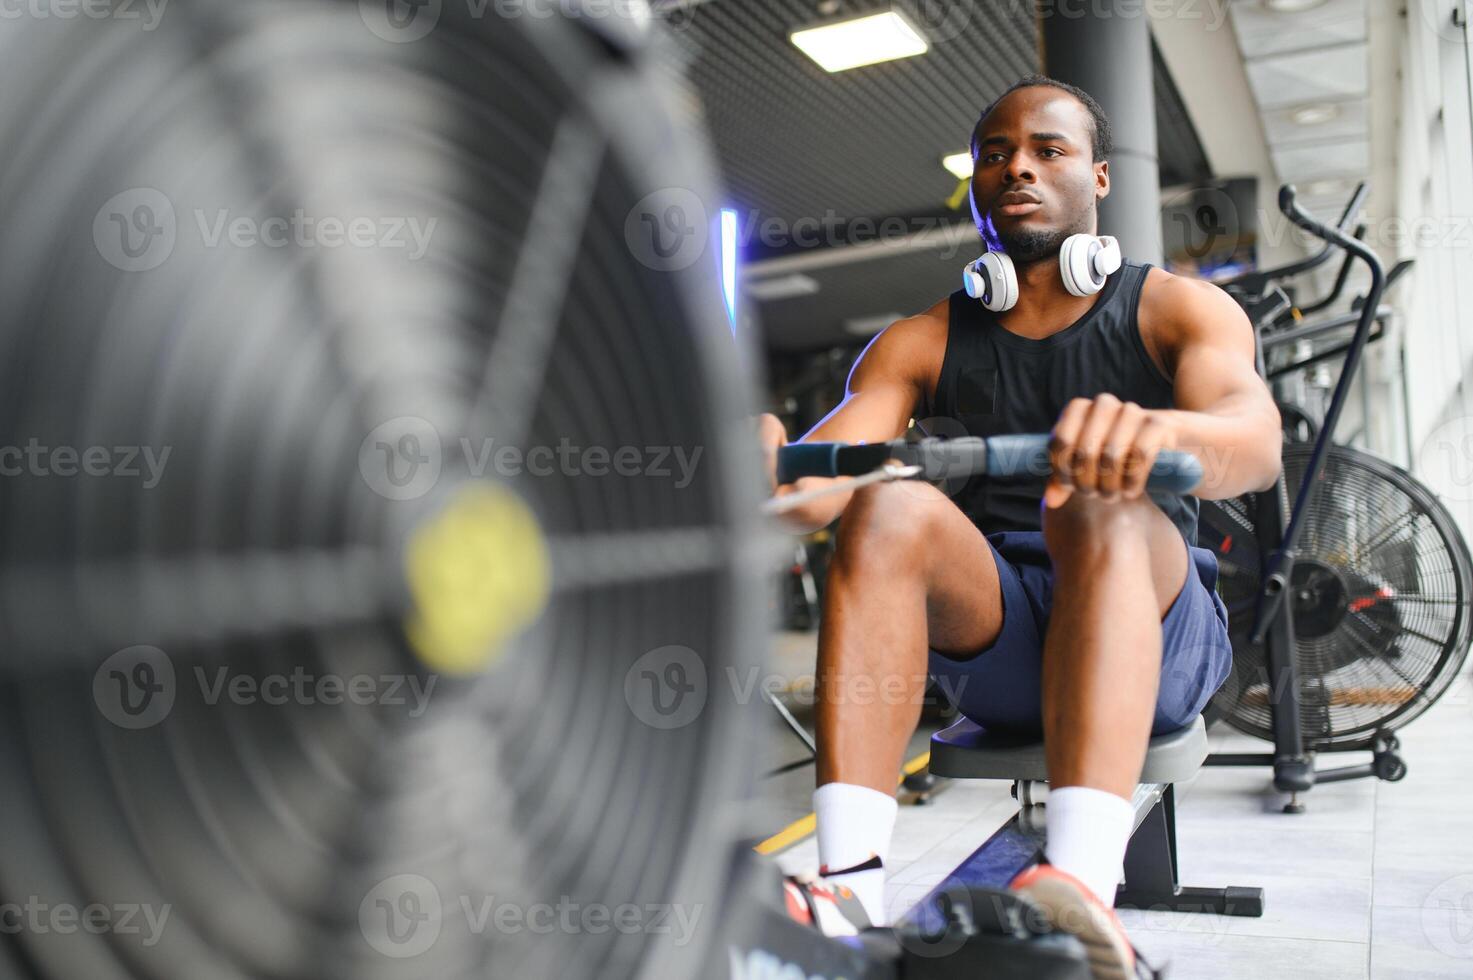 motiviert jung schwarz Sportler haben trainieren auf Rudern Maschine foto